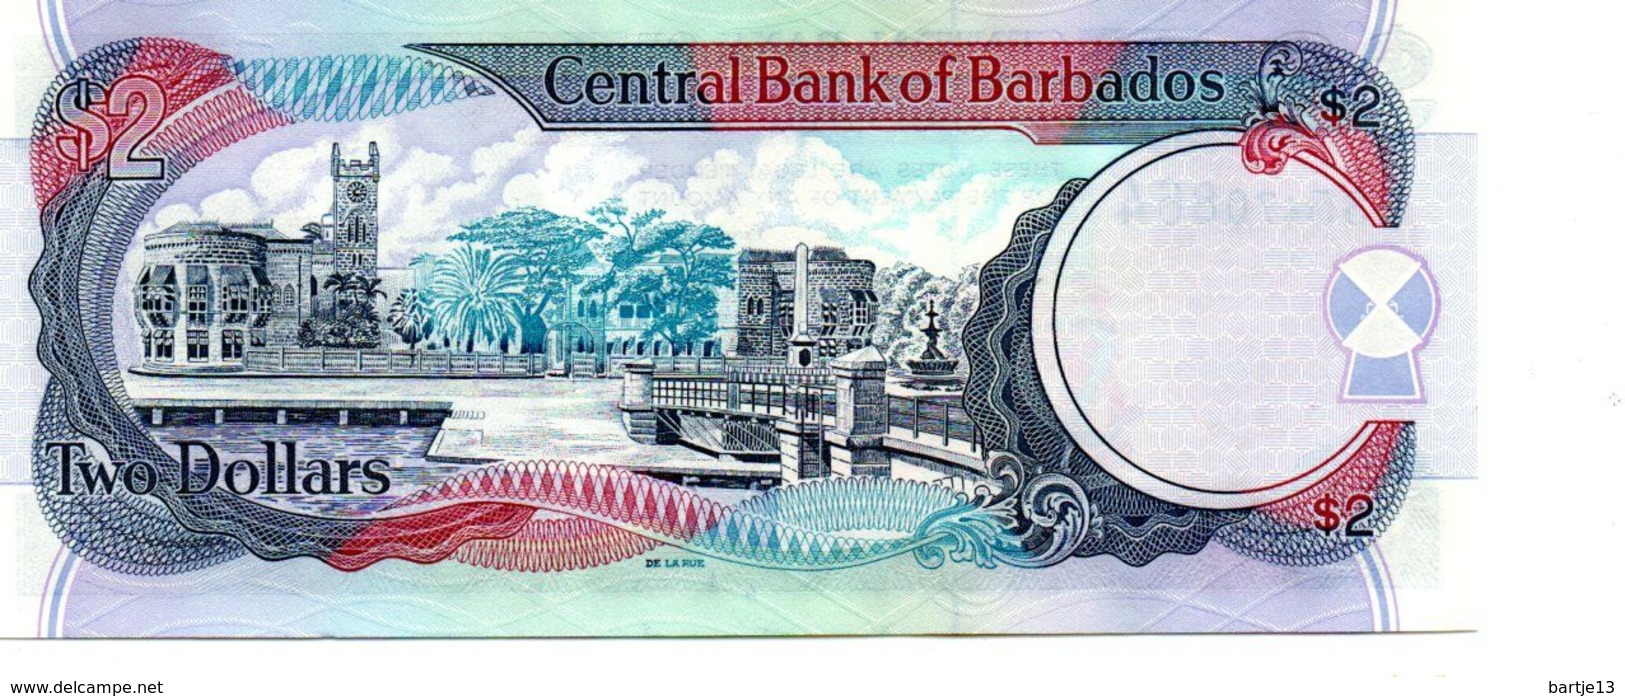 BARBADOS 2 DOLLARS PICK 60 UNCIRCULATED - Barbados